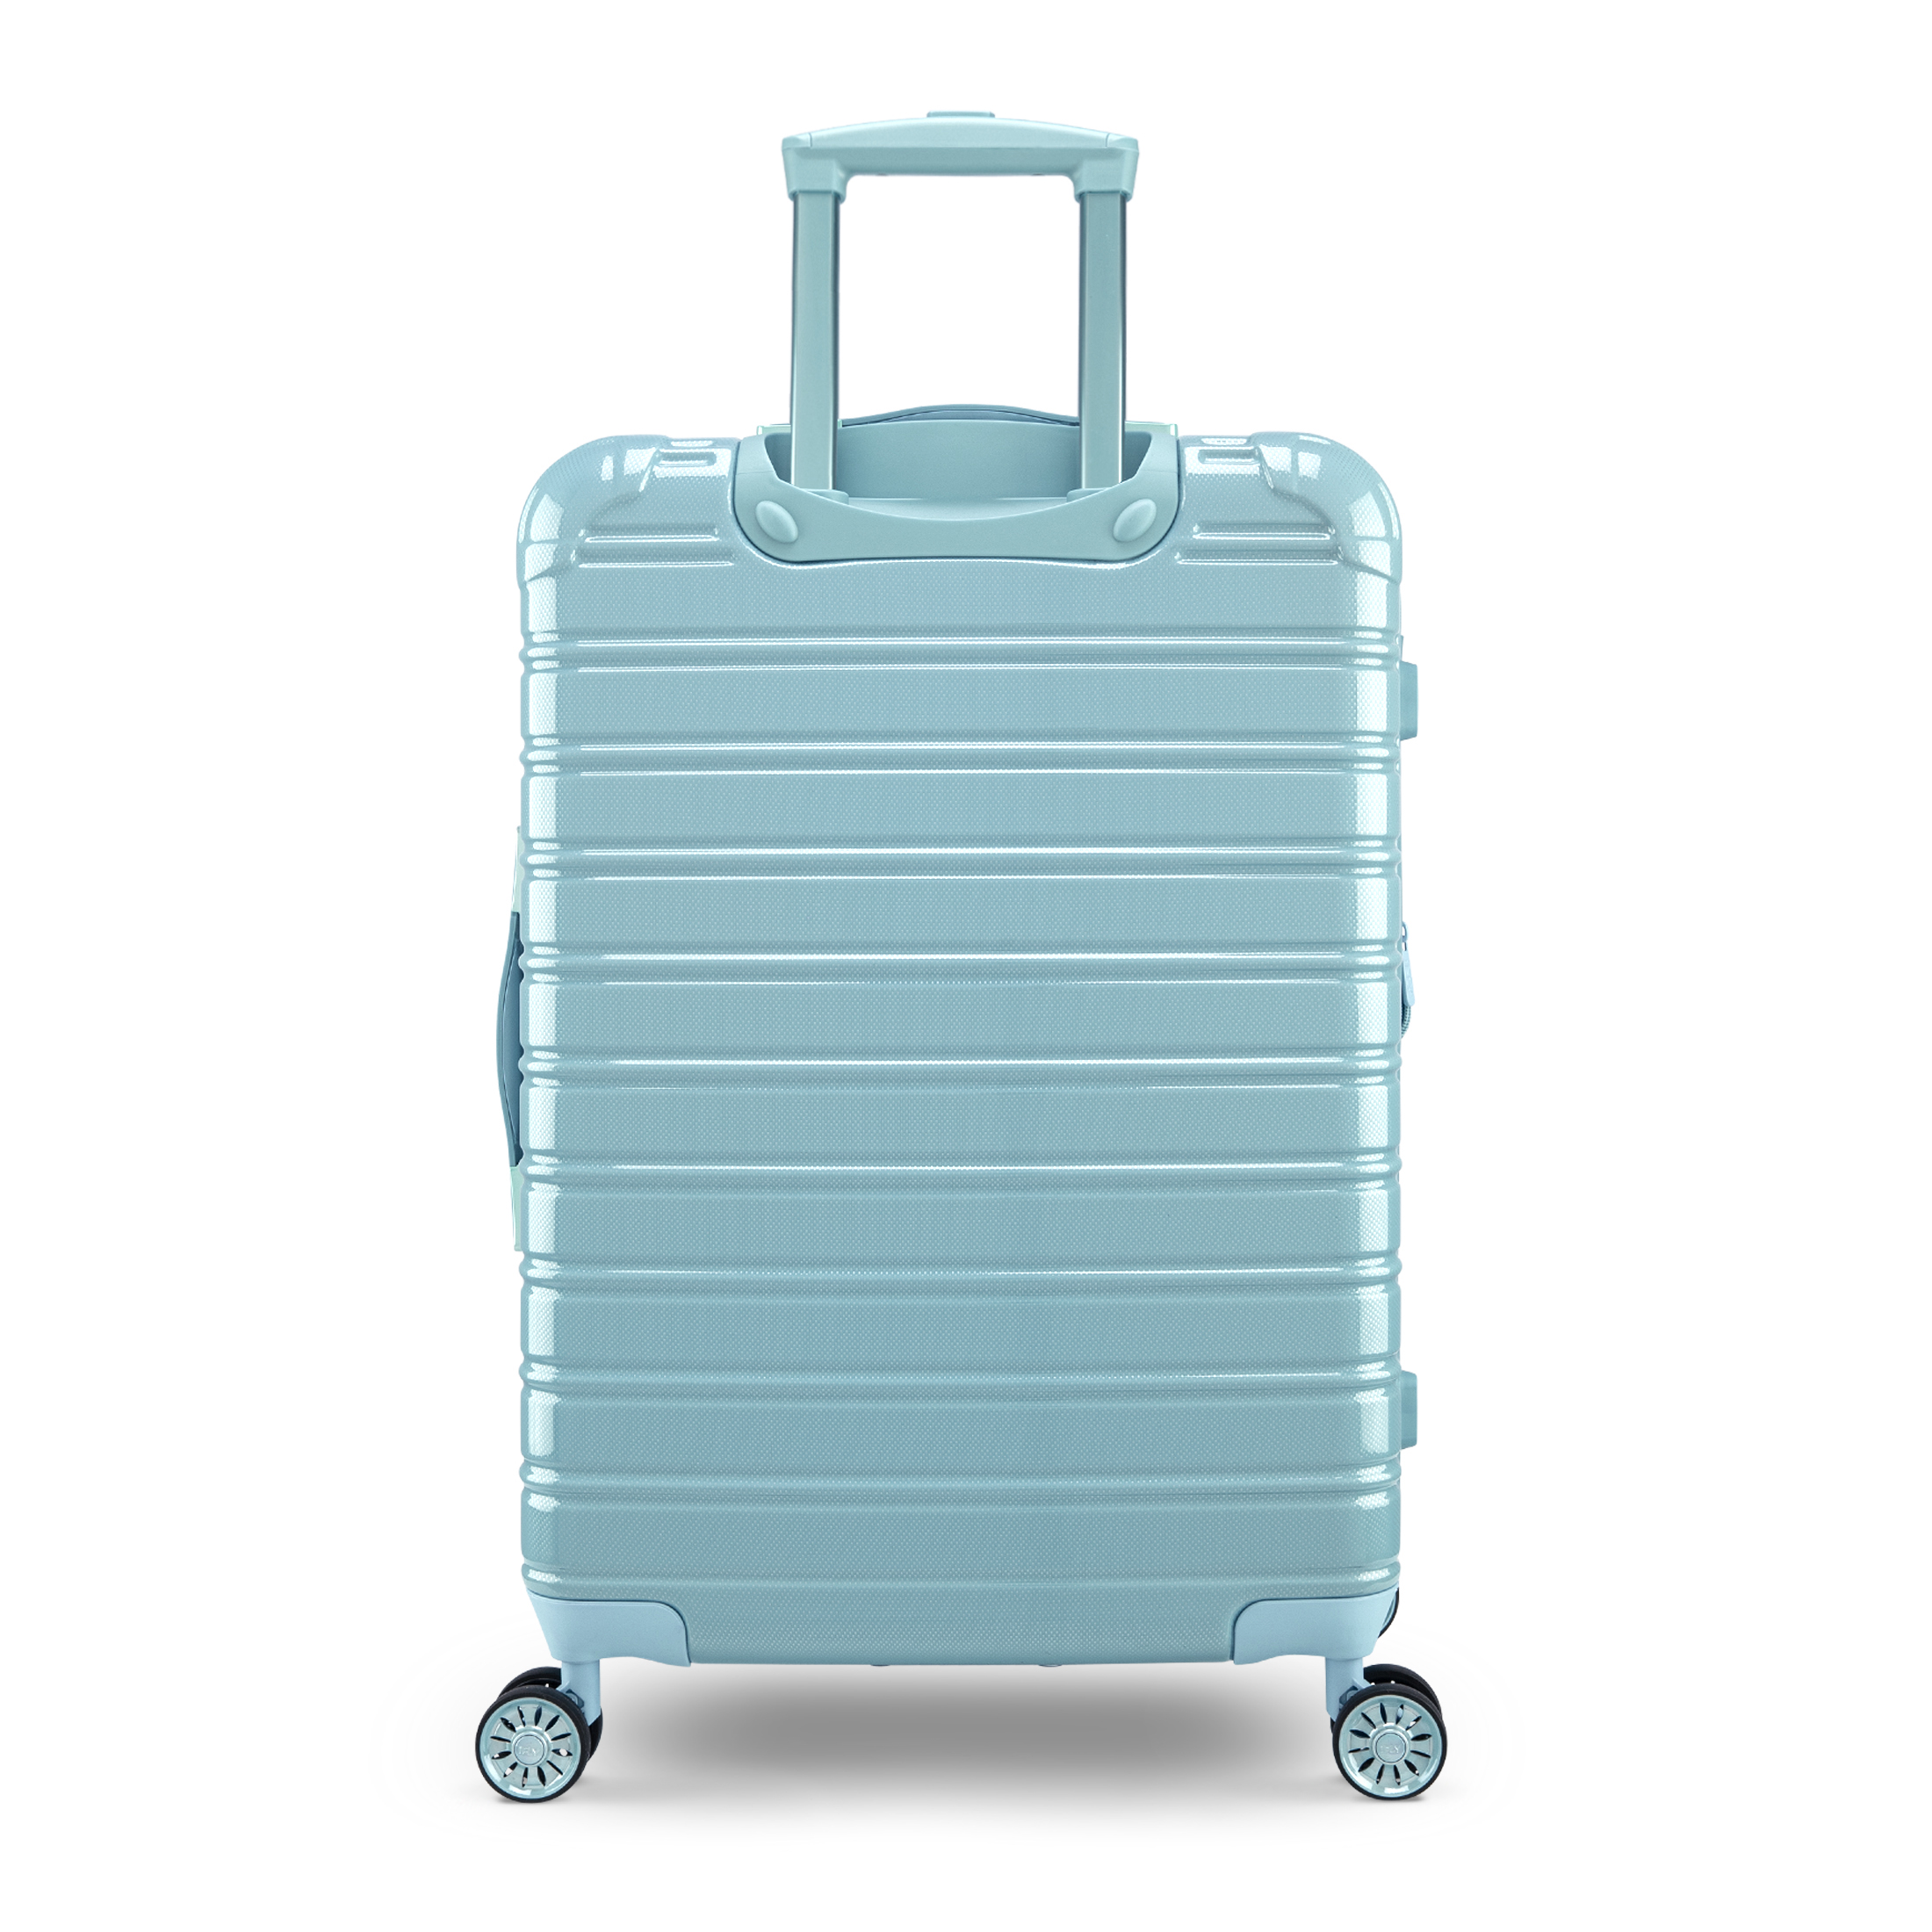 iFLY Hardside Luggage Fibertech 20", Sky - image 8 of 9